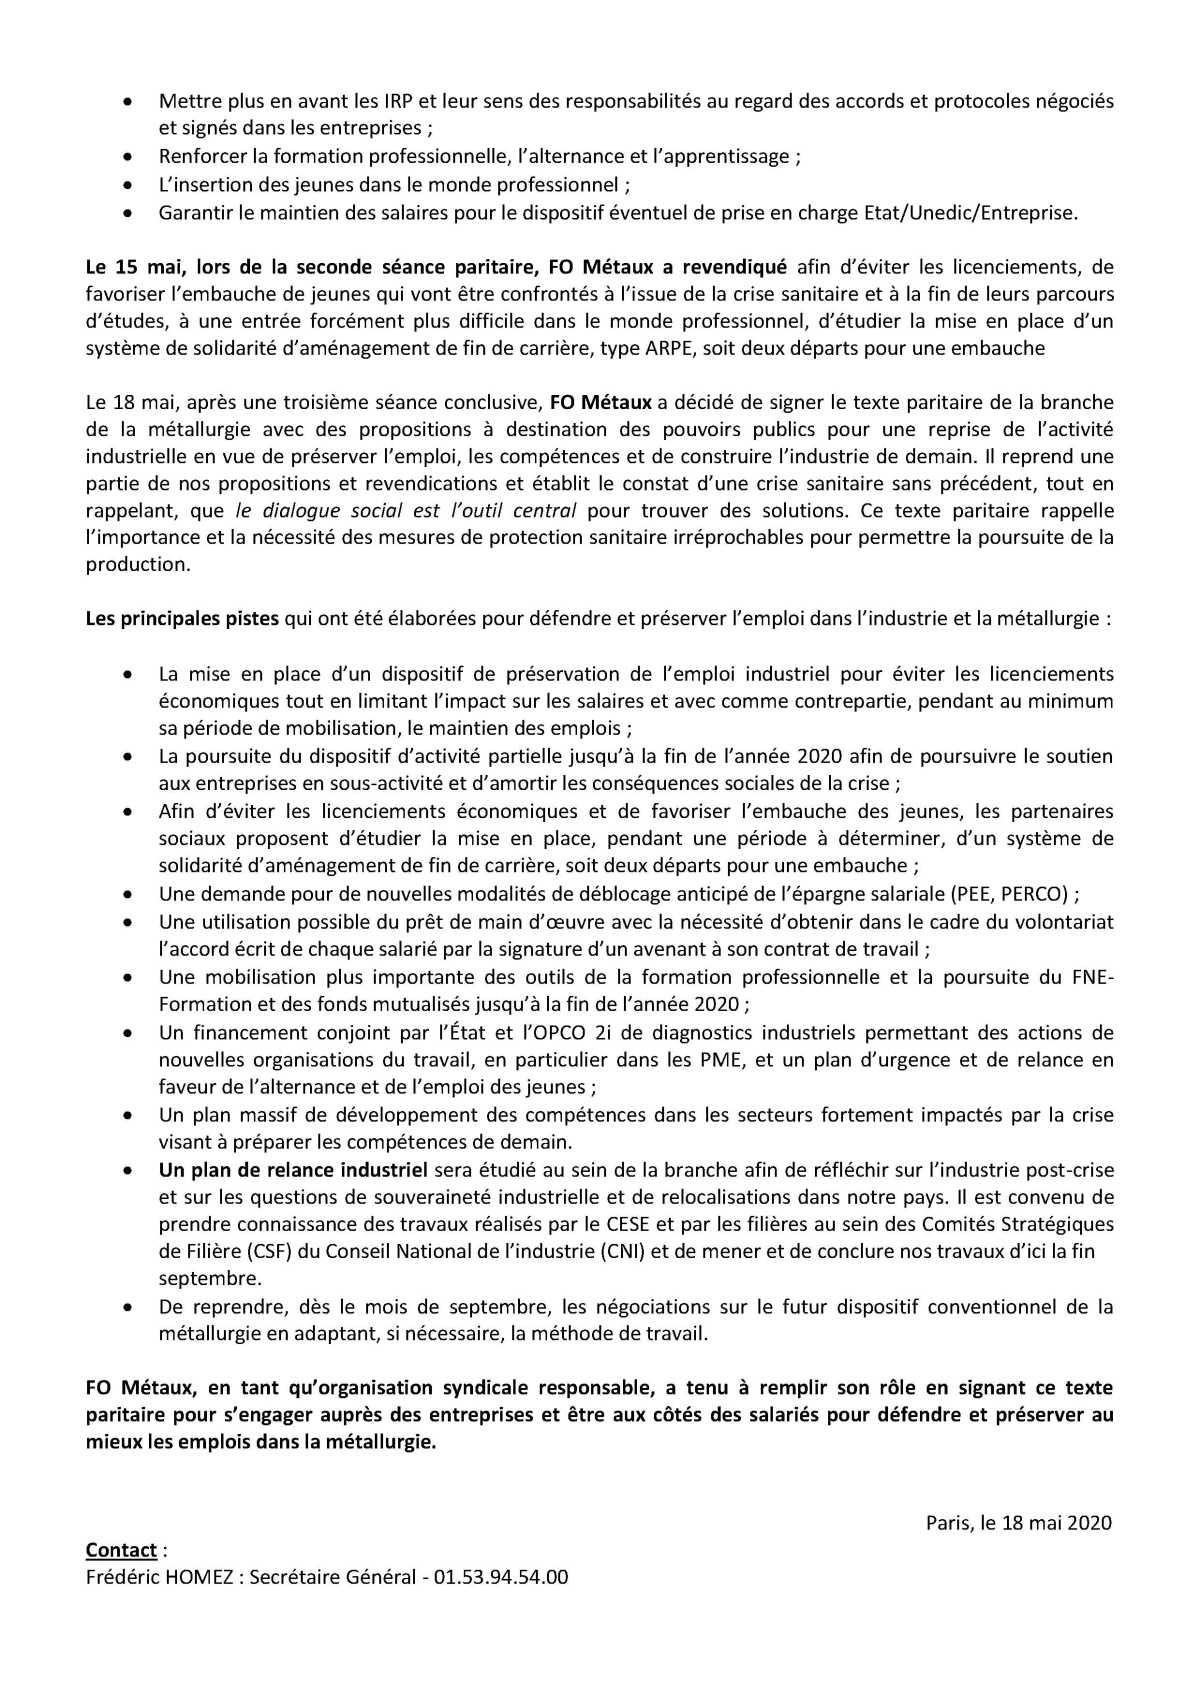 Crise sanitaire : FO Métaux signe le texte paritaire de la Métallurgie pour protéger l’industrie et ses emplois